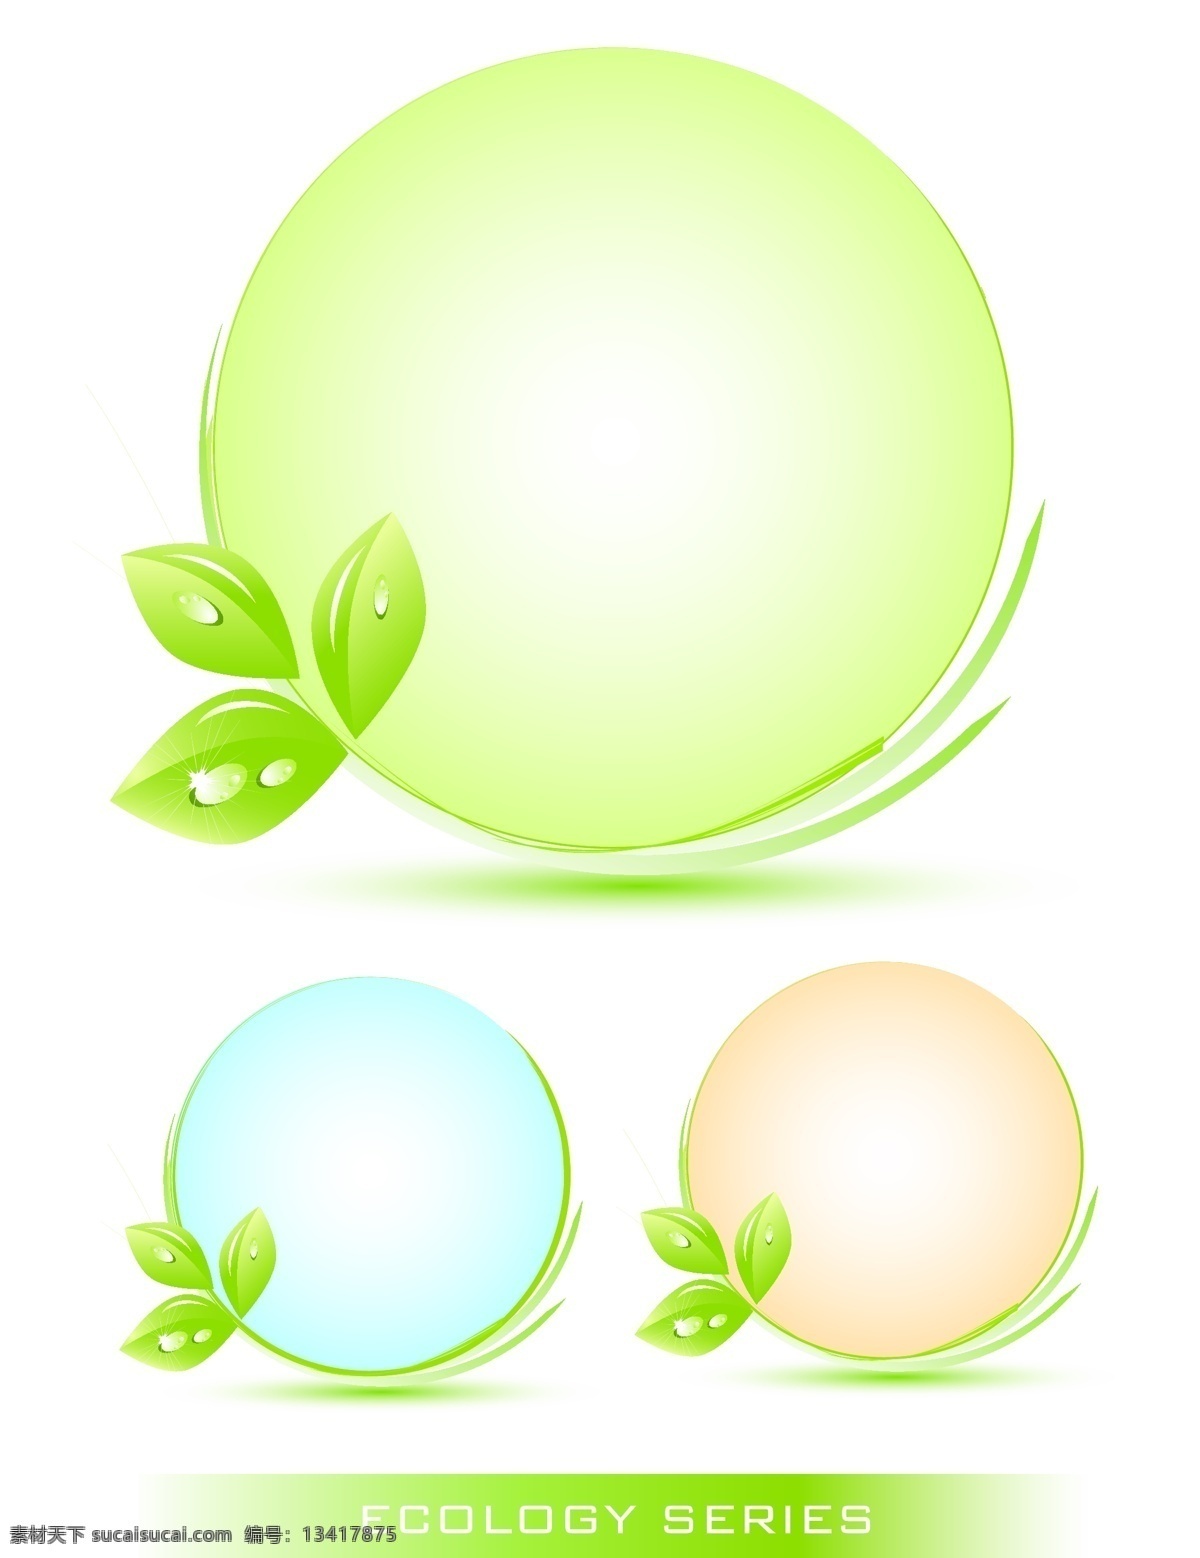 绿色 树叶 主题 环保 图标 矢量 灯泡 节能 明 矢量素材 矢量图标 水珠 其他矢量图